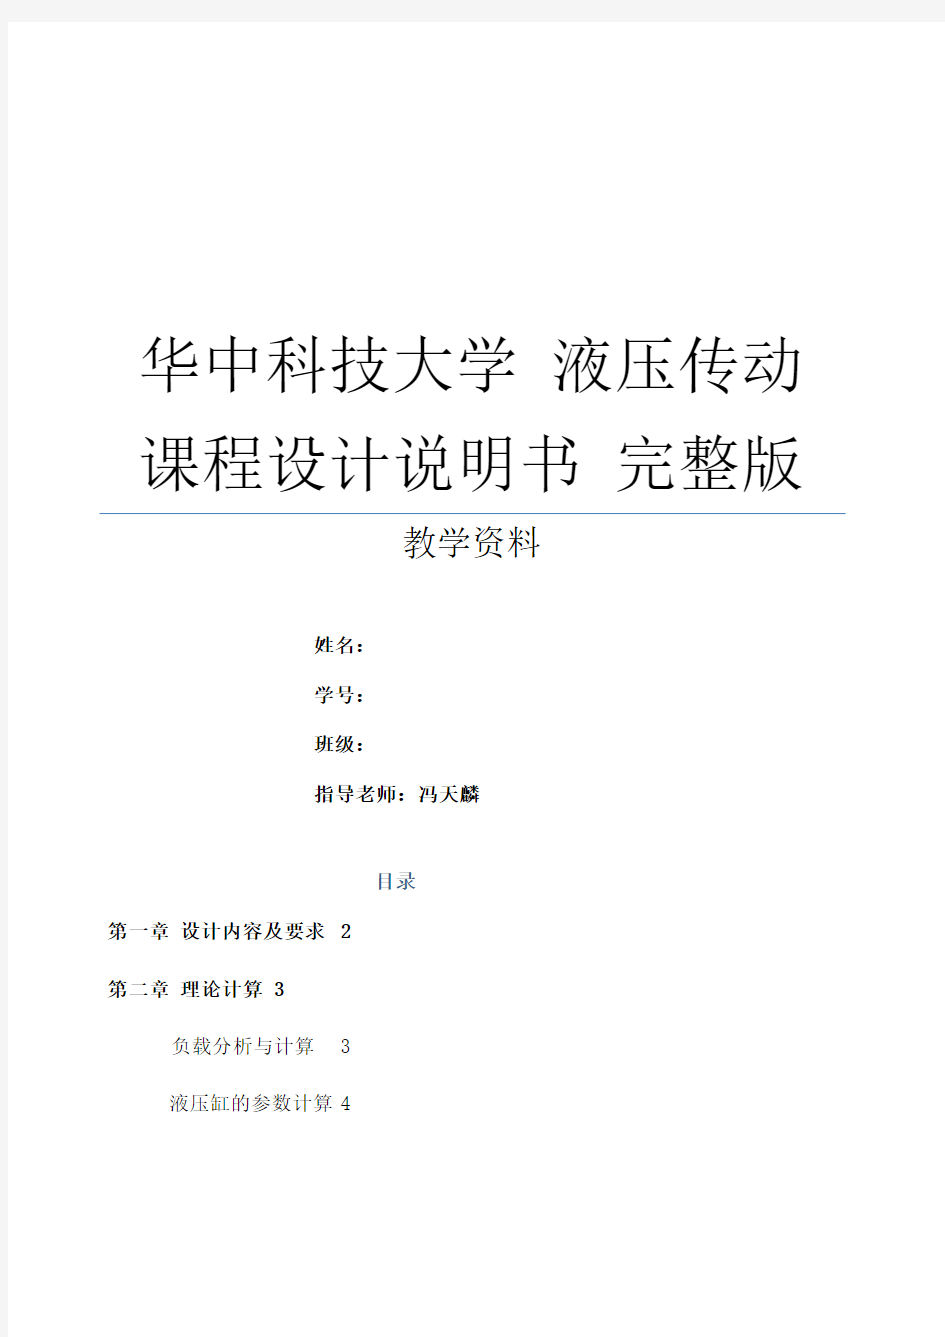 华中科技大学液压传动课程设计说明书完整版